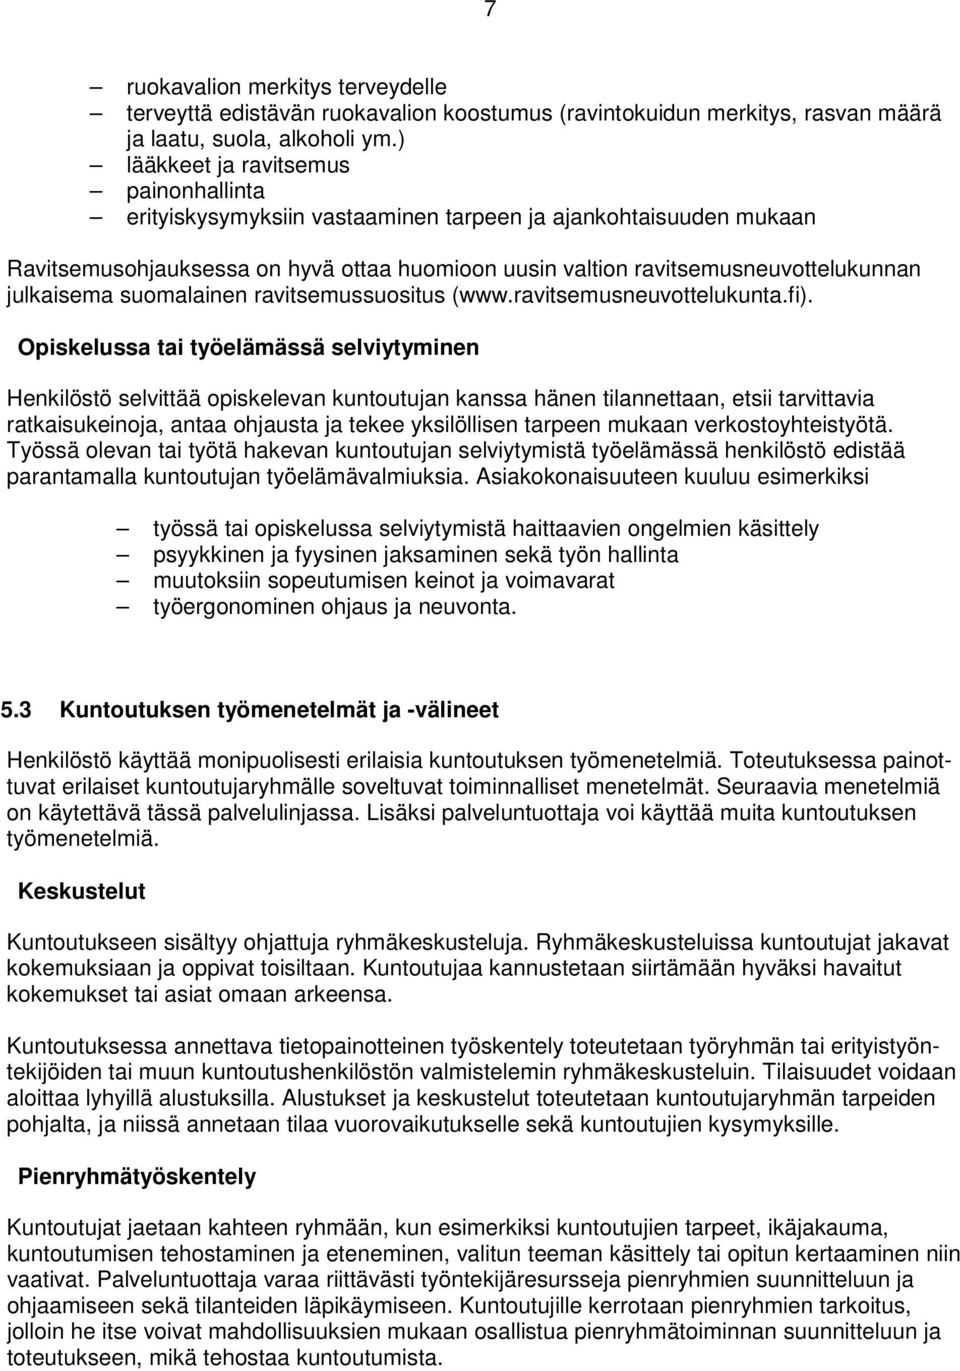 julkaisema suomalainen ravitsemussuositus (www.ravitsemusneuvottelukunta.fi).